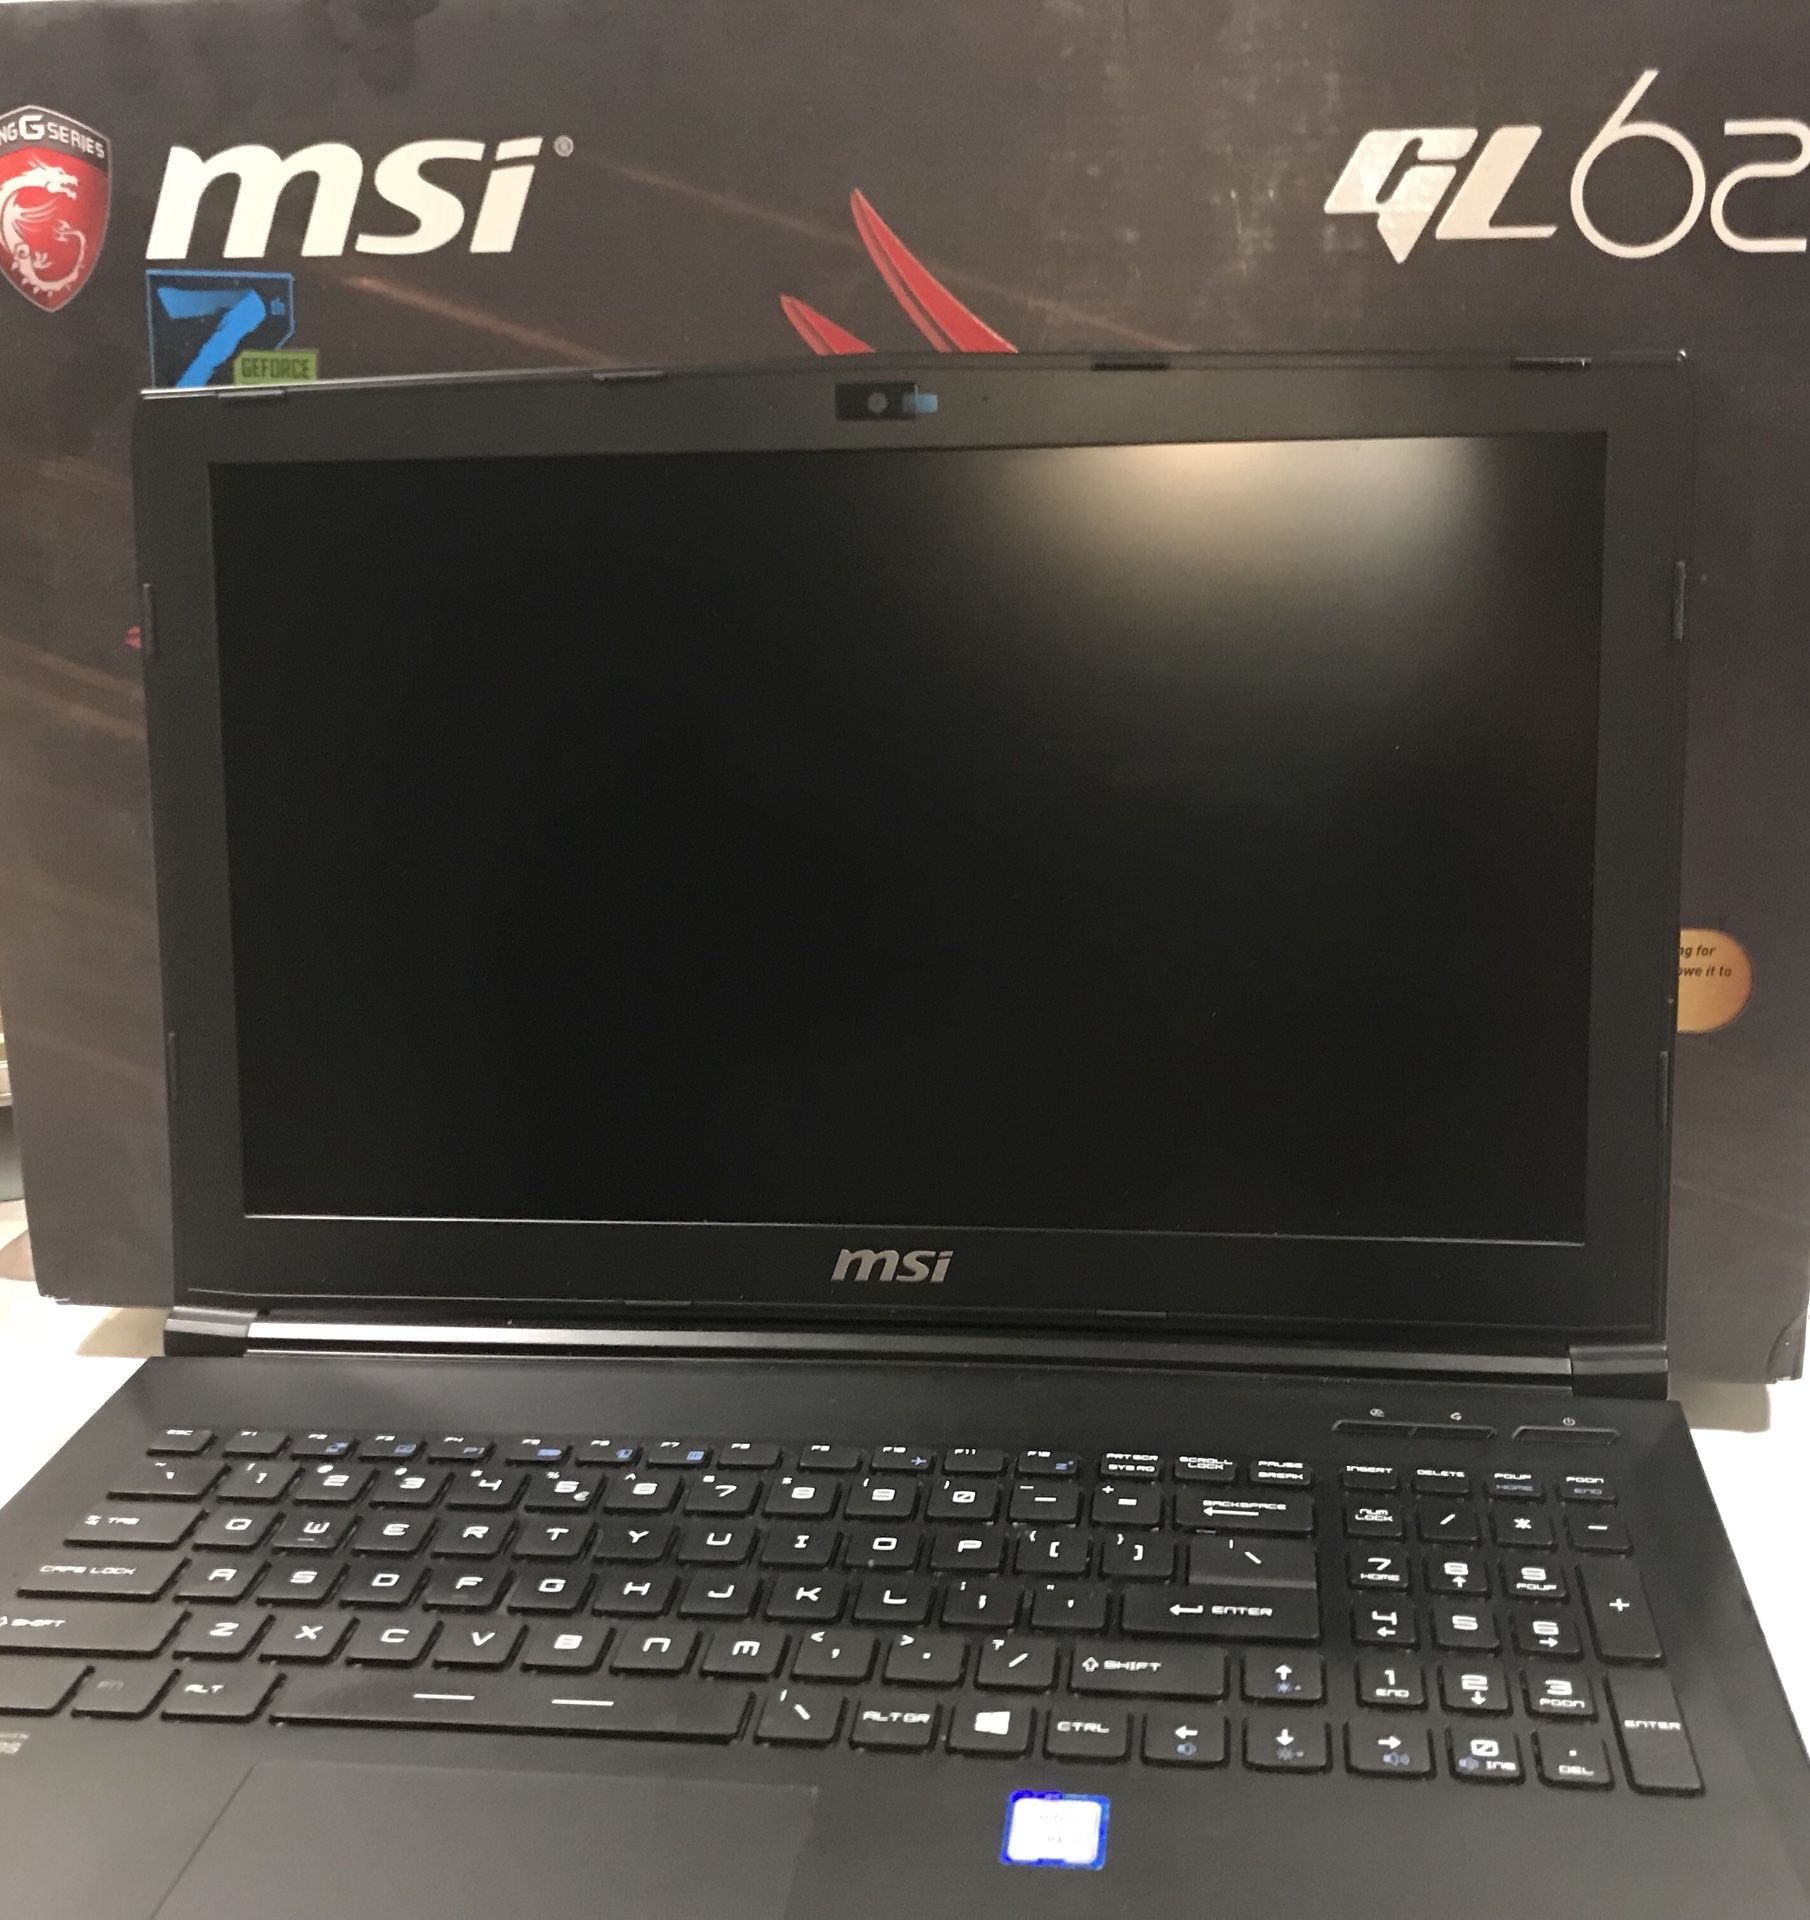 MSI laptop